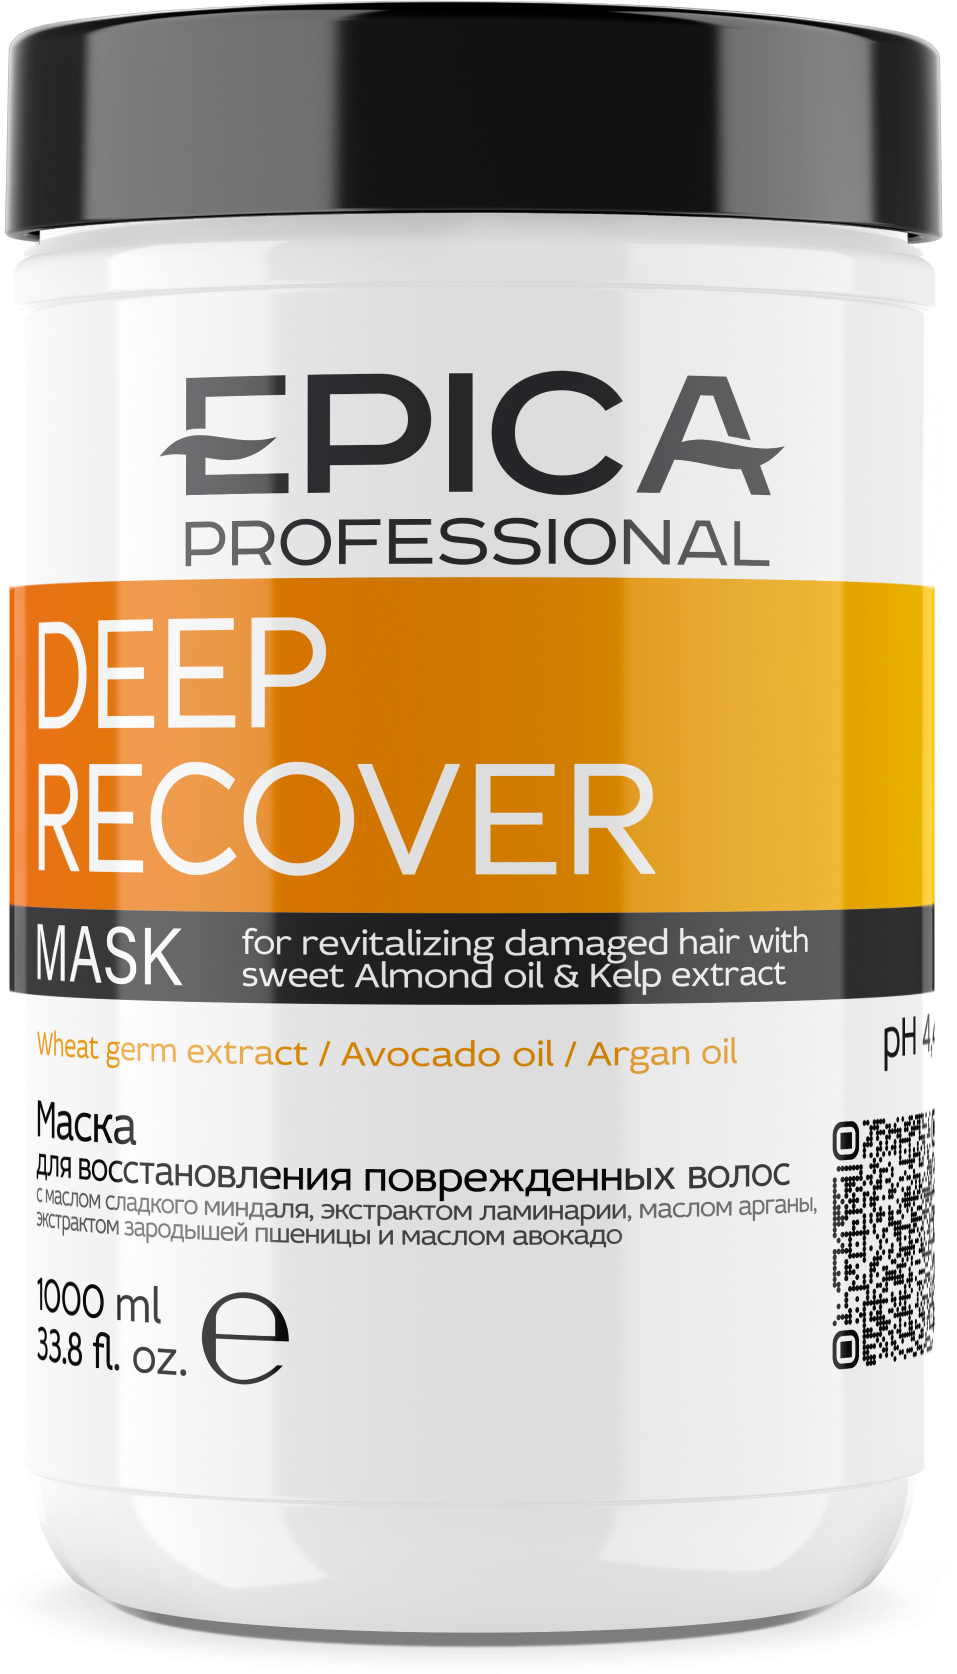 EPICA Professional Deep Recover Маска д/восстановления повреждённых волос, 1000 мл